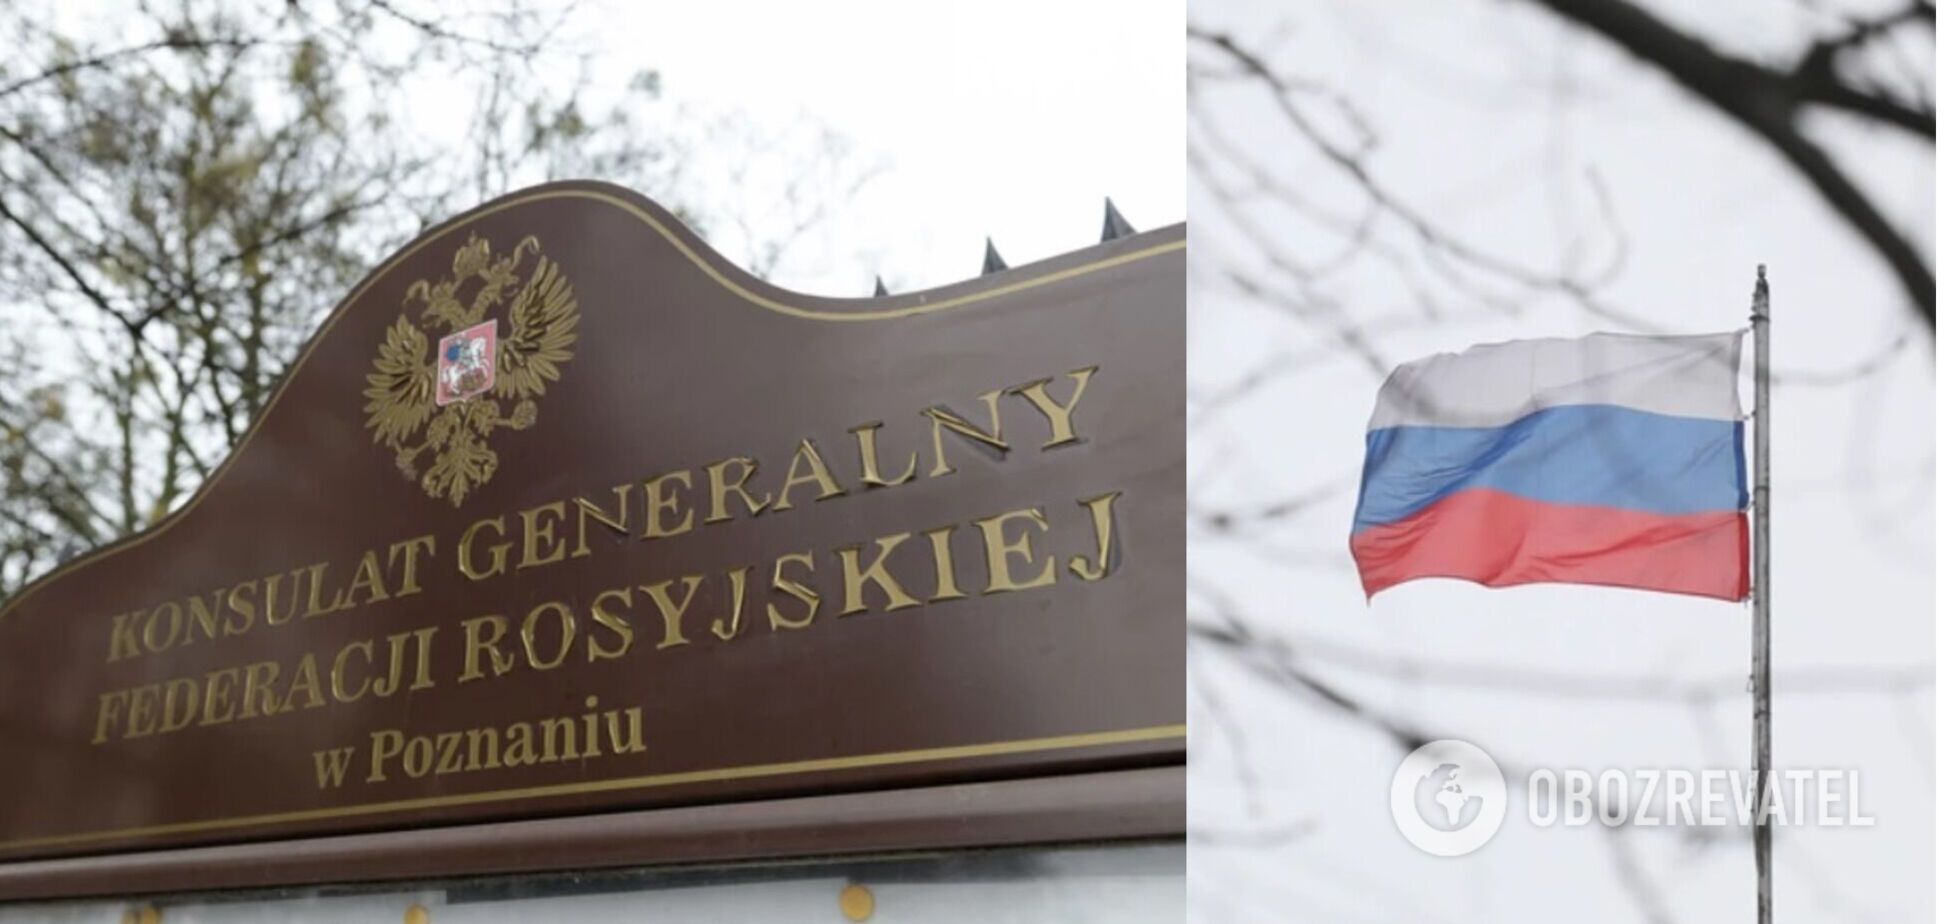 Польша выслала российского консула и обвинила его в распространении коронавируса